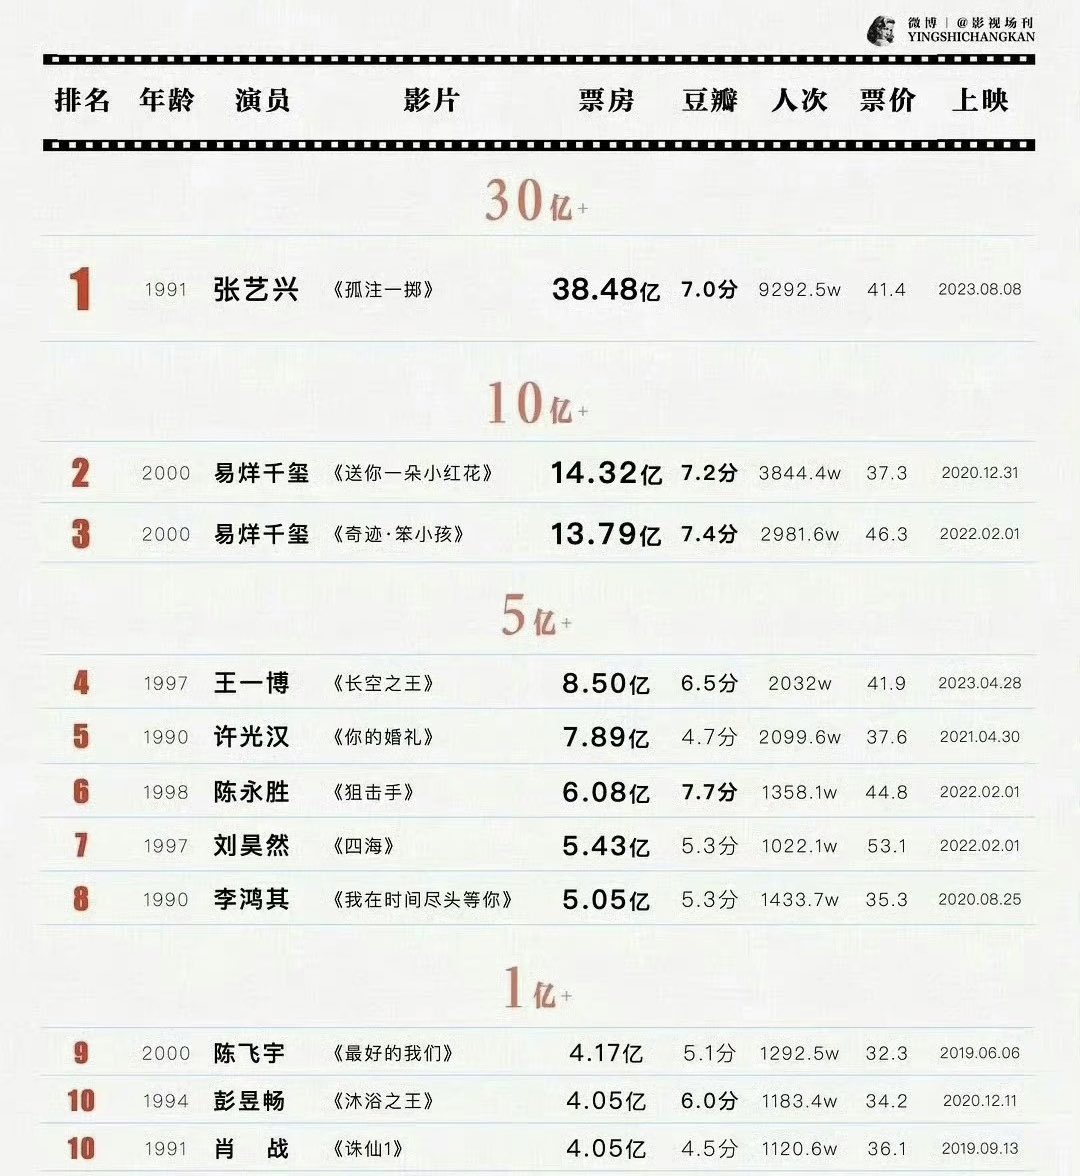 Top 10 box office list of 90s-00s male actors:
[single film + first billing]

#ZhangYixing - 3.8B
#YiYangQianxi - 1.4B , 1.3B
#WangYibo - 850M
#XuGuanghan - 789M
#ChenYongsheng - 608M
#LiuHaoran - 543M
#LiHongqi - 505M
#ChenFeiyu - 417M
#PengYuchang - 405M
#XiaoZhan - 405M